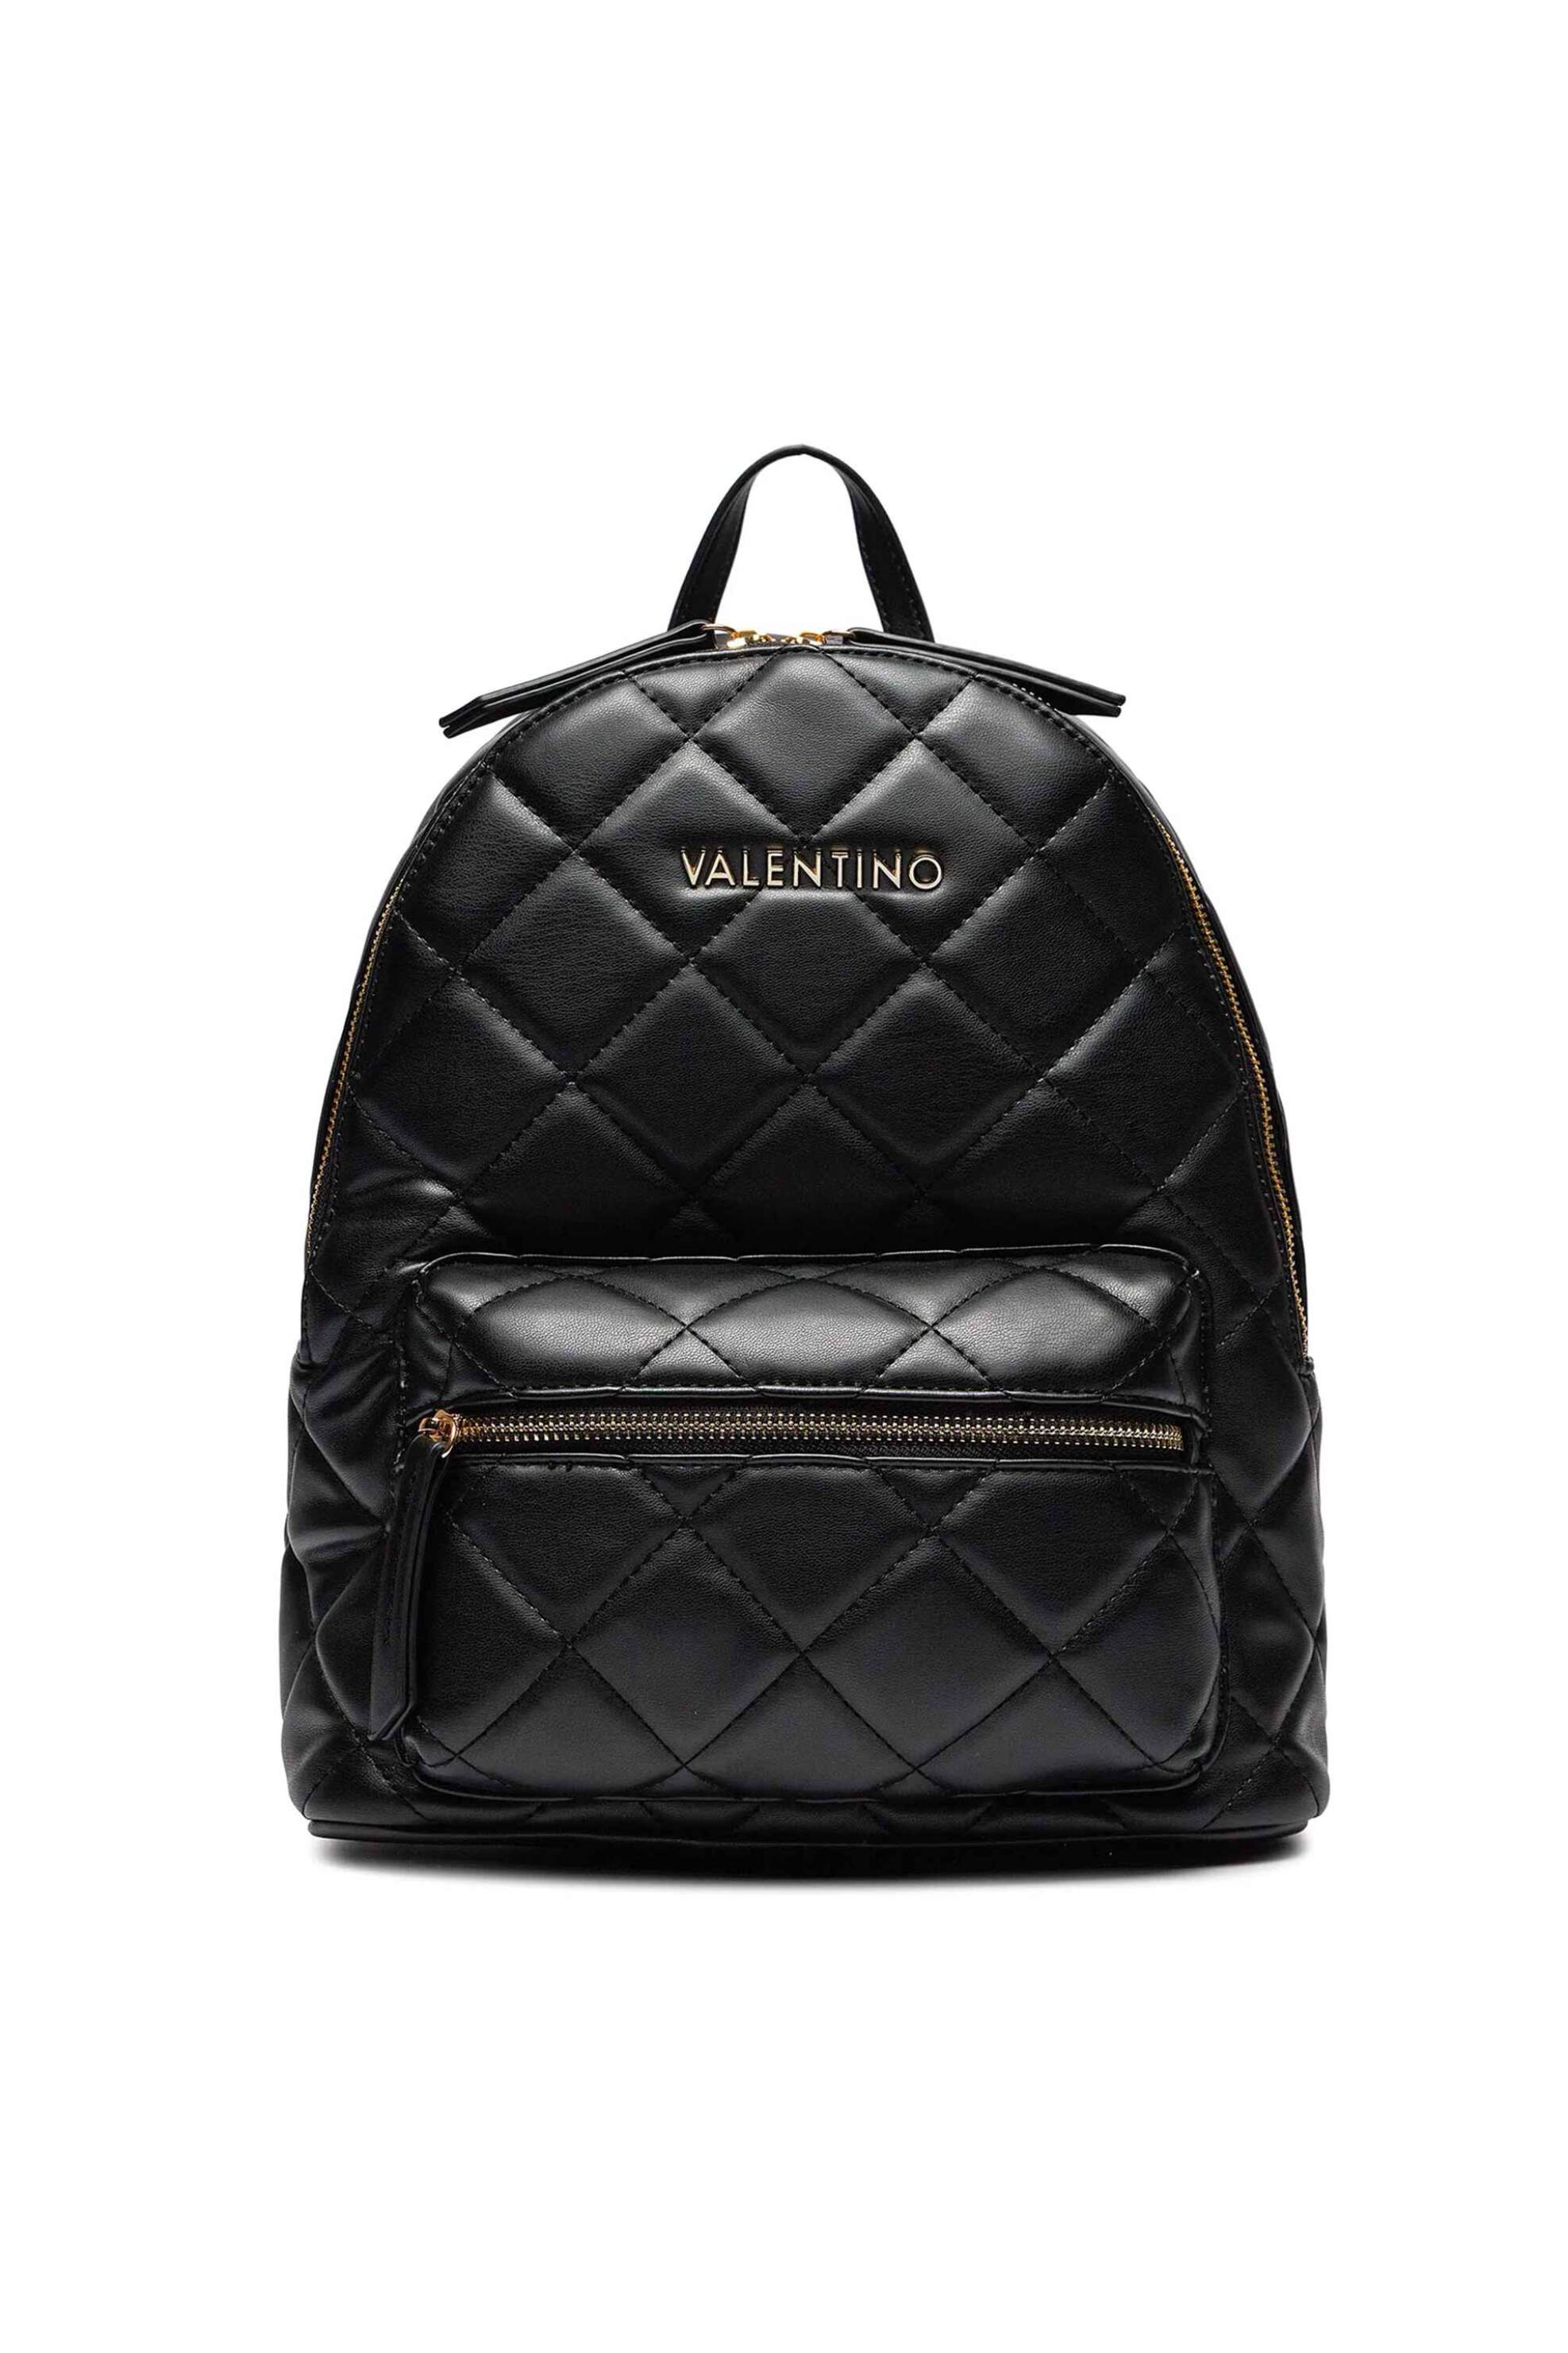 Γυναίκα > ΤΣΑΝΤΕΣ > Σακίδια & Backpacks Valentino γυναικείο backpack μονόχρωμο με σχέδιο και contrast λογότυπο "Ocarina" - 55KVBS3KK37R/OC Μαύρο